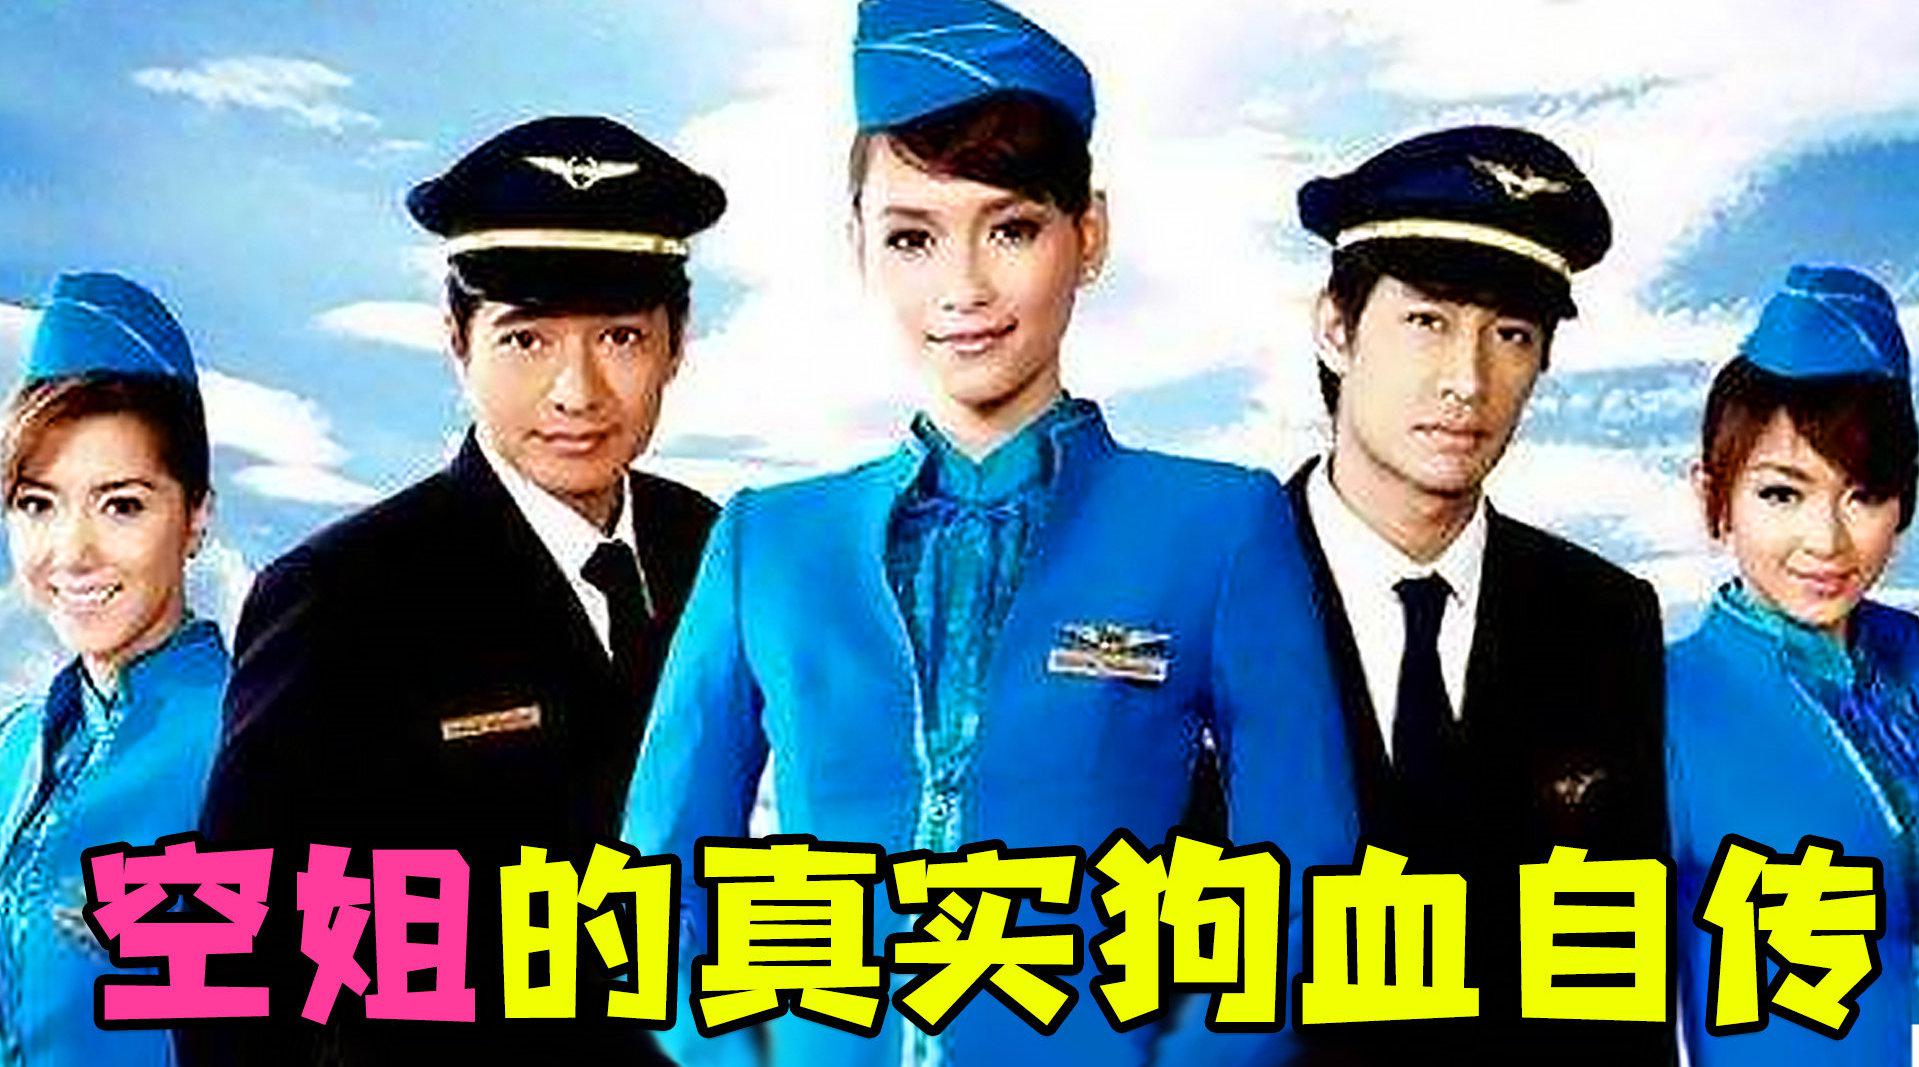 《中国机长》举行首映礼 张天爱空姐造型亮相 - 明星网